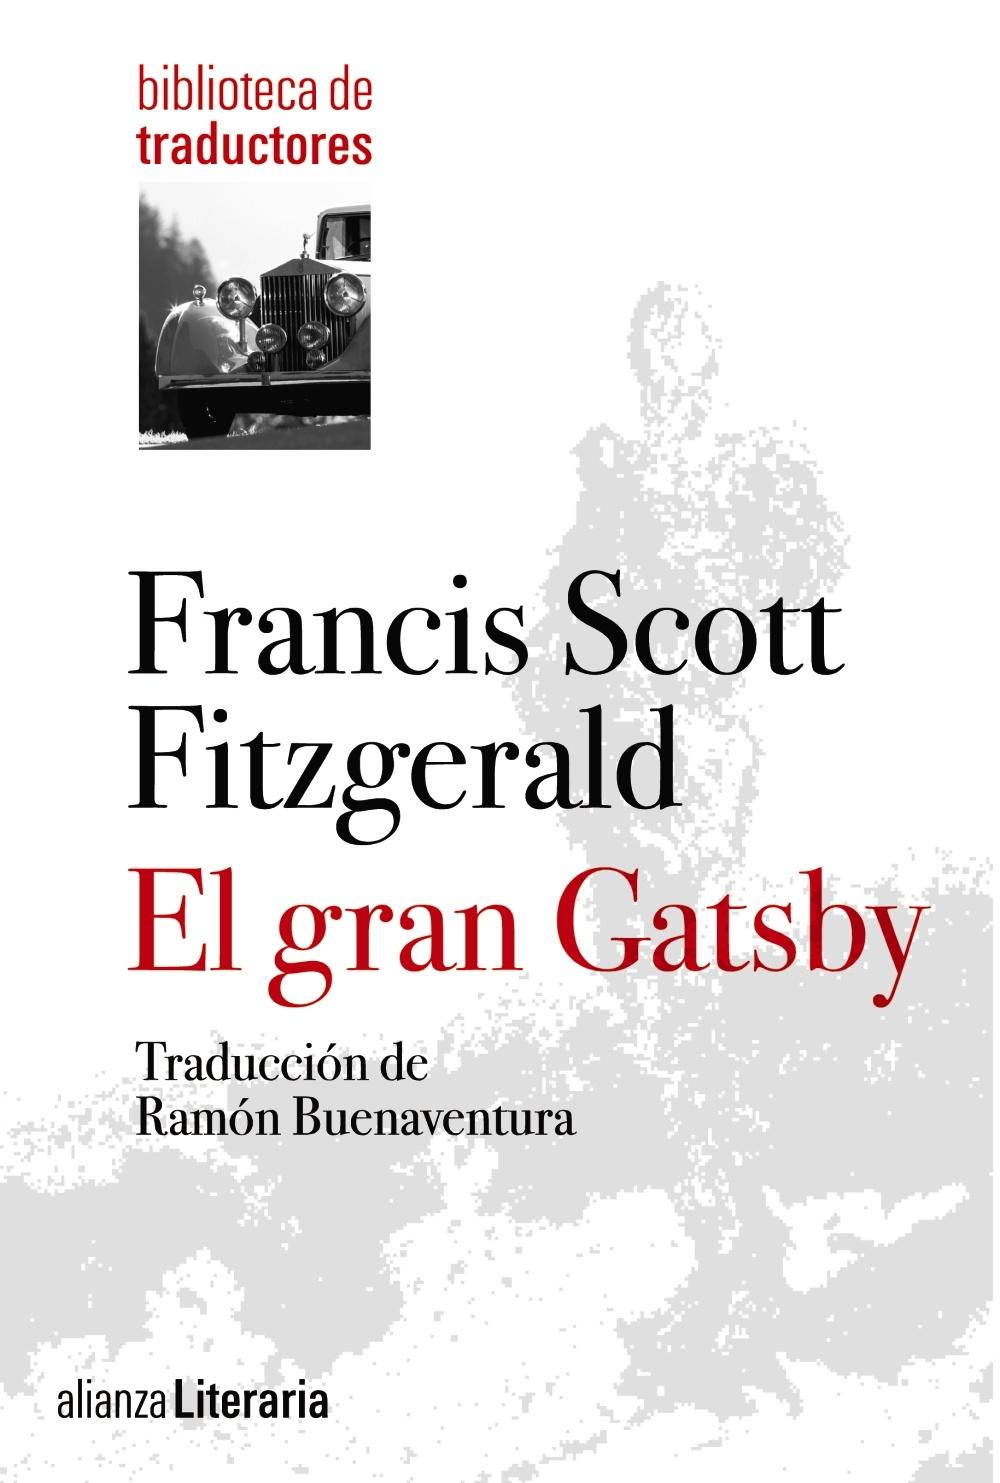 El Gran Gatsby "Traducción de Ramón Buenaventura"